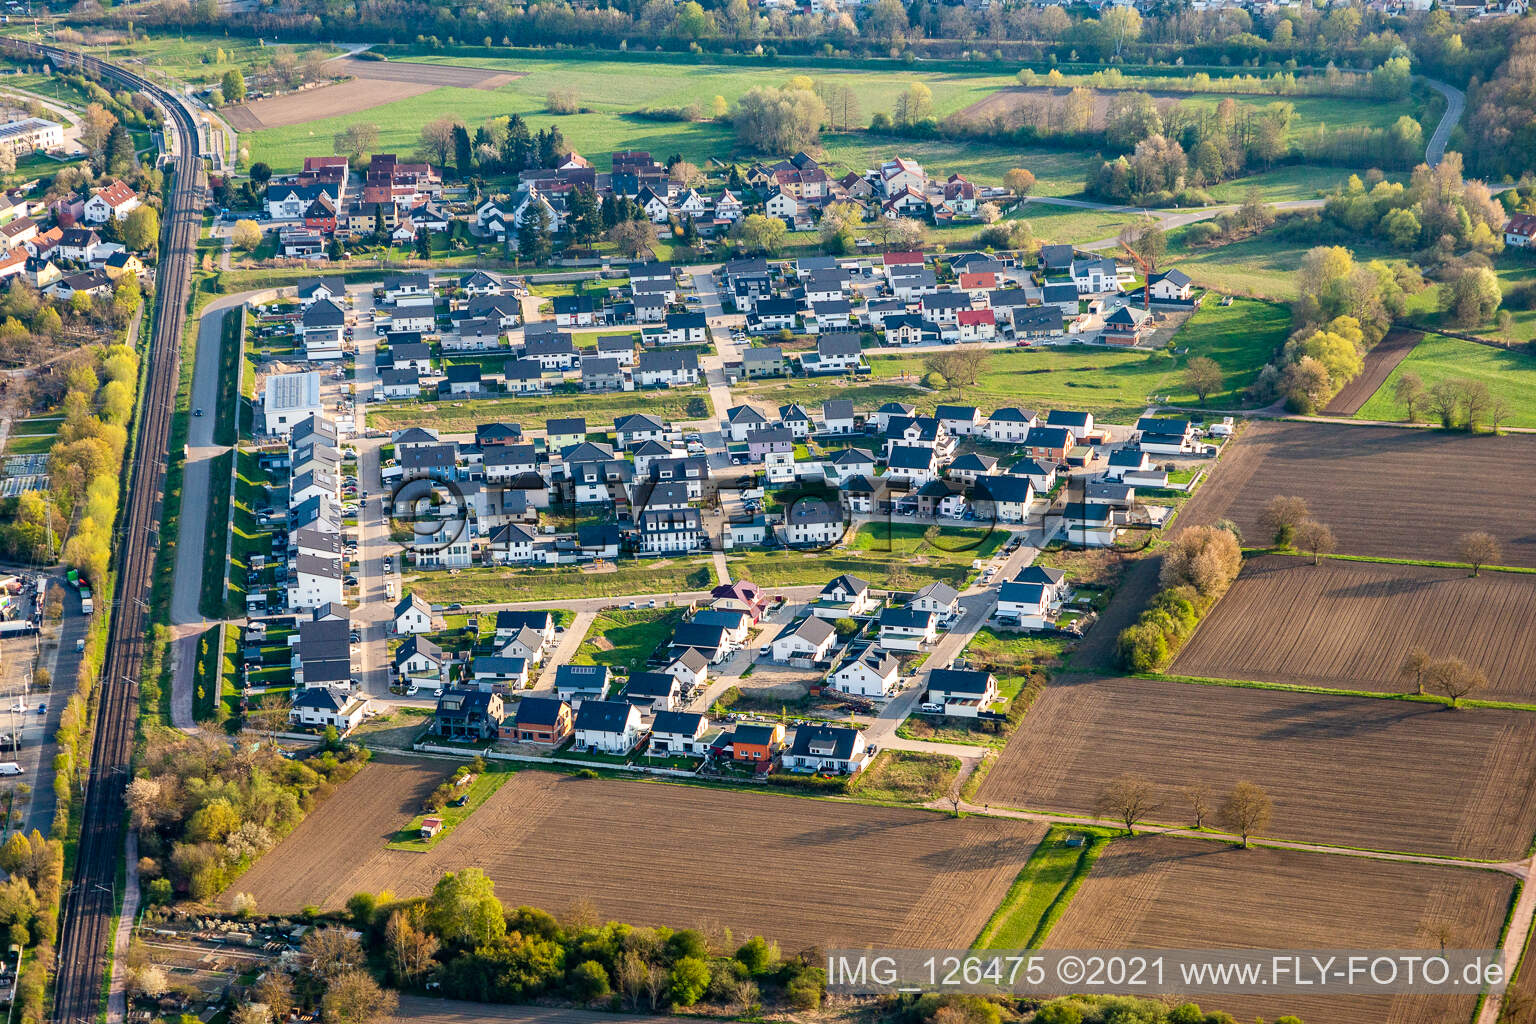 Luftbild von Paul Klee Ring in Wörth am Rhein im Bundesland Rheinland-Pfalz, Deutschland